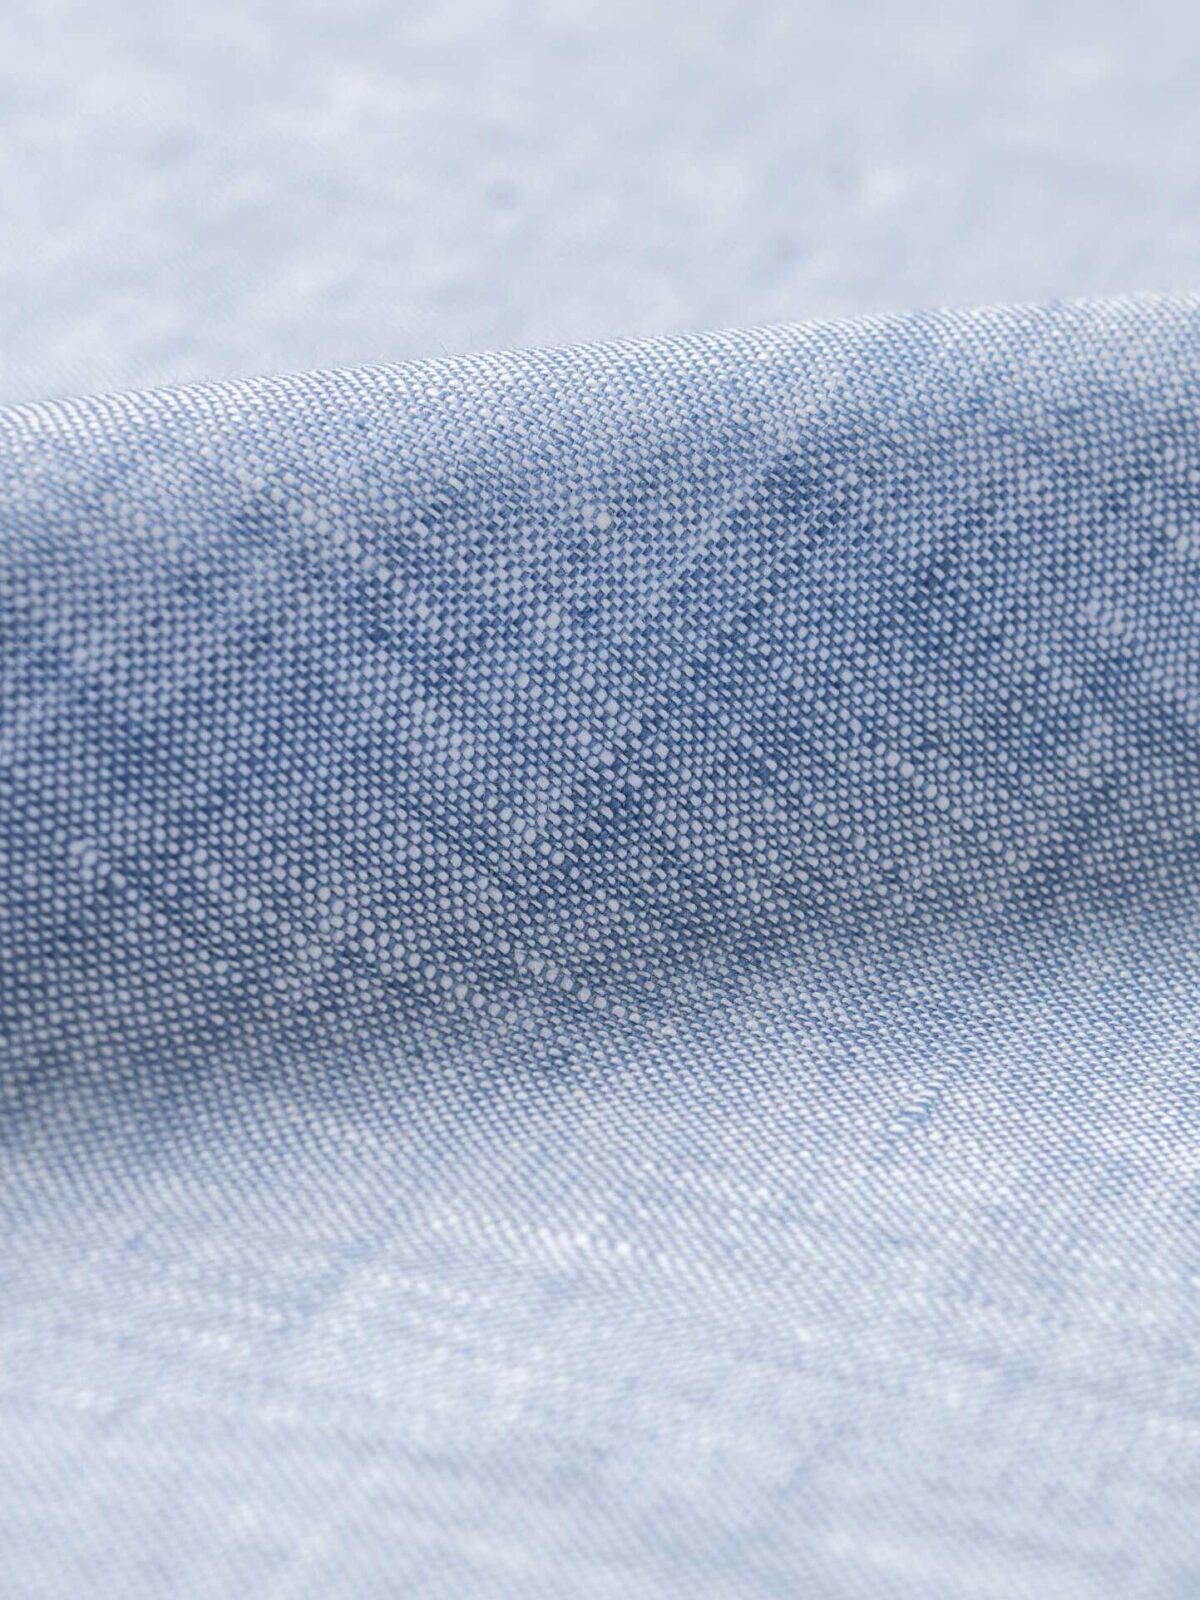 Beige Color Plain Cotton Linen Dress Material Fabric